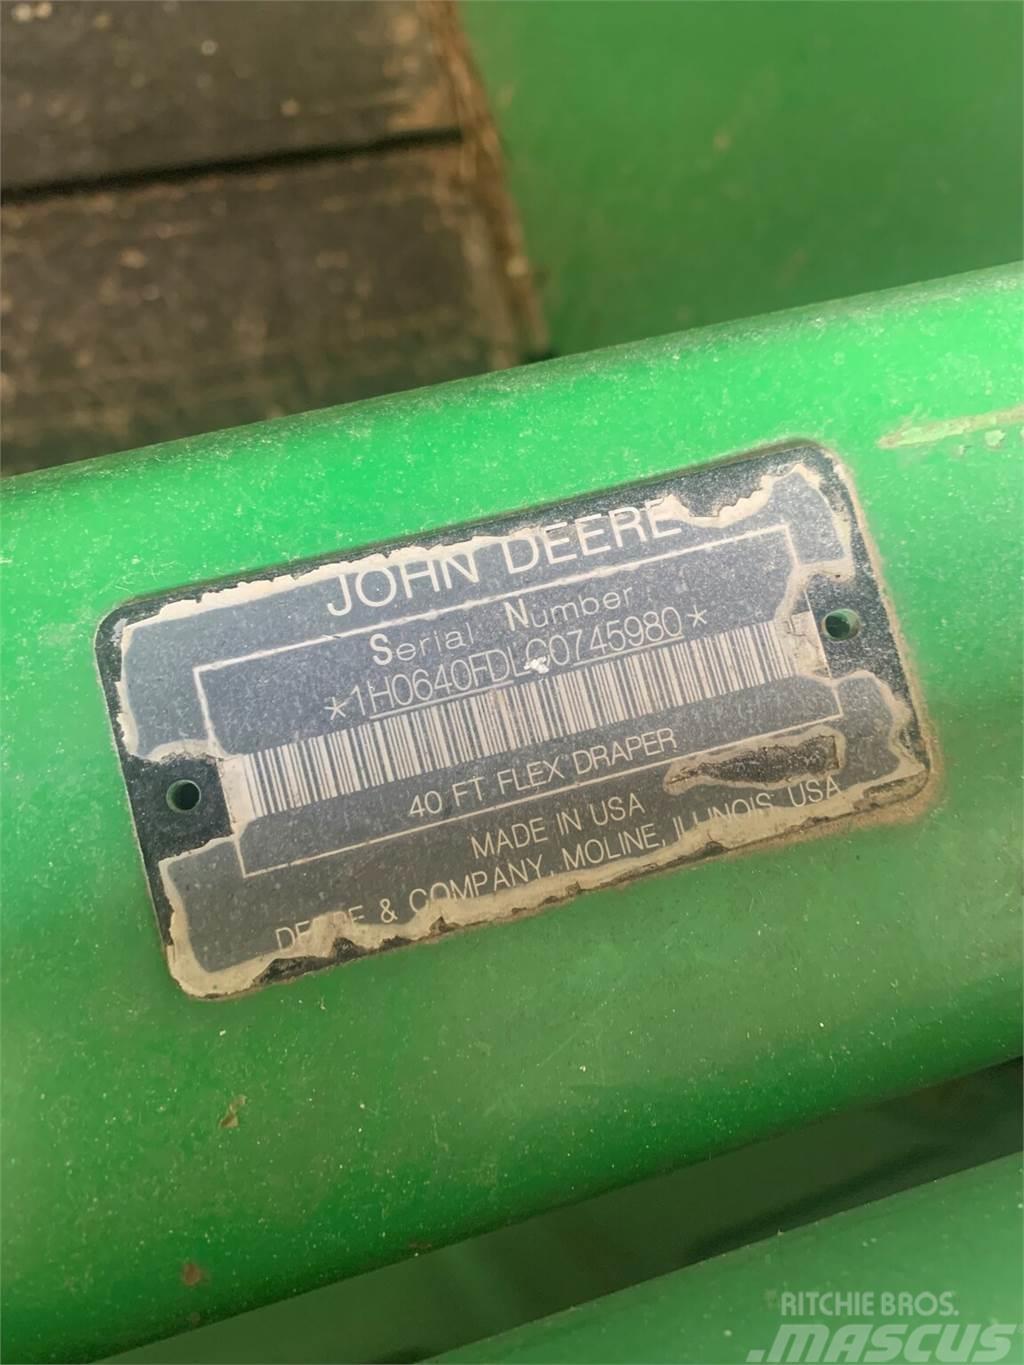 John Deere 640FD Combine harvester accessories